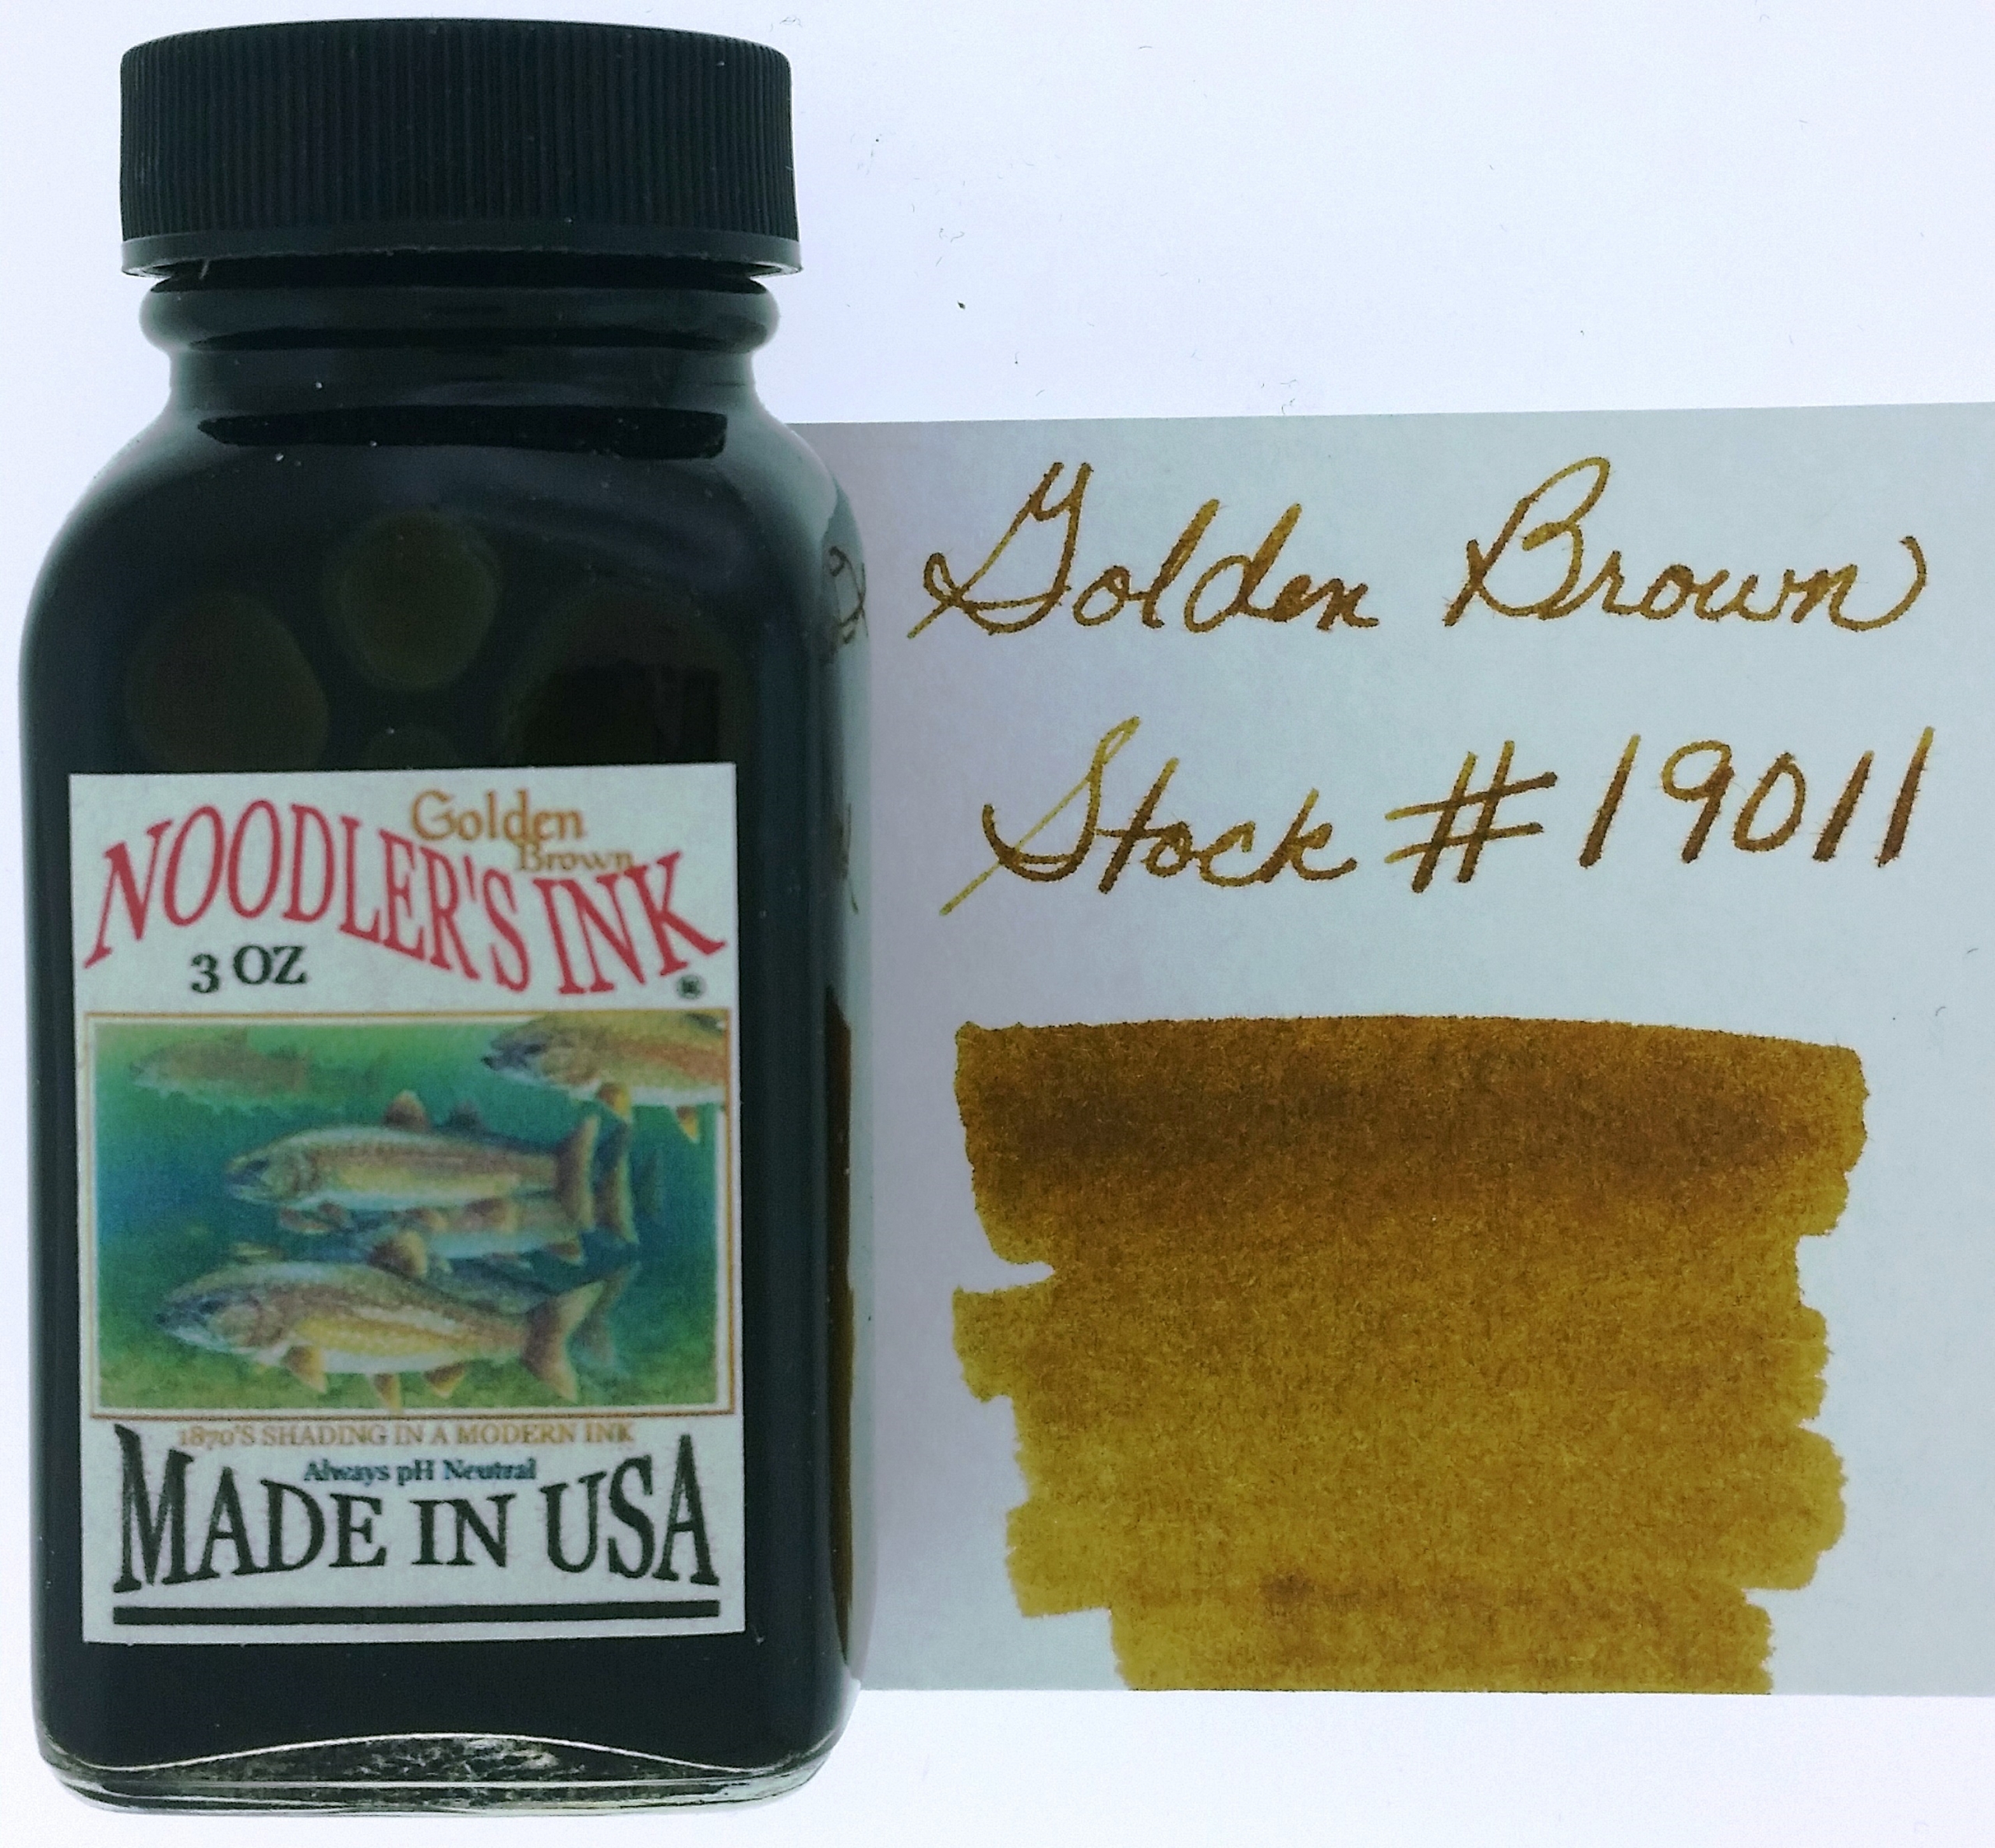 Noodler's #41 Brown Ink - 3 oz Bottle